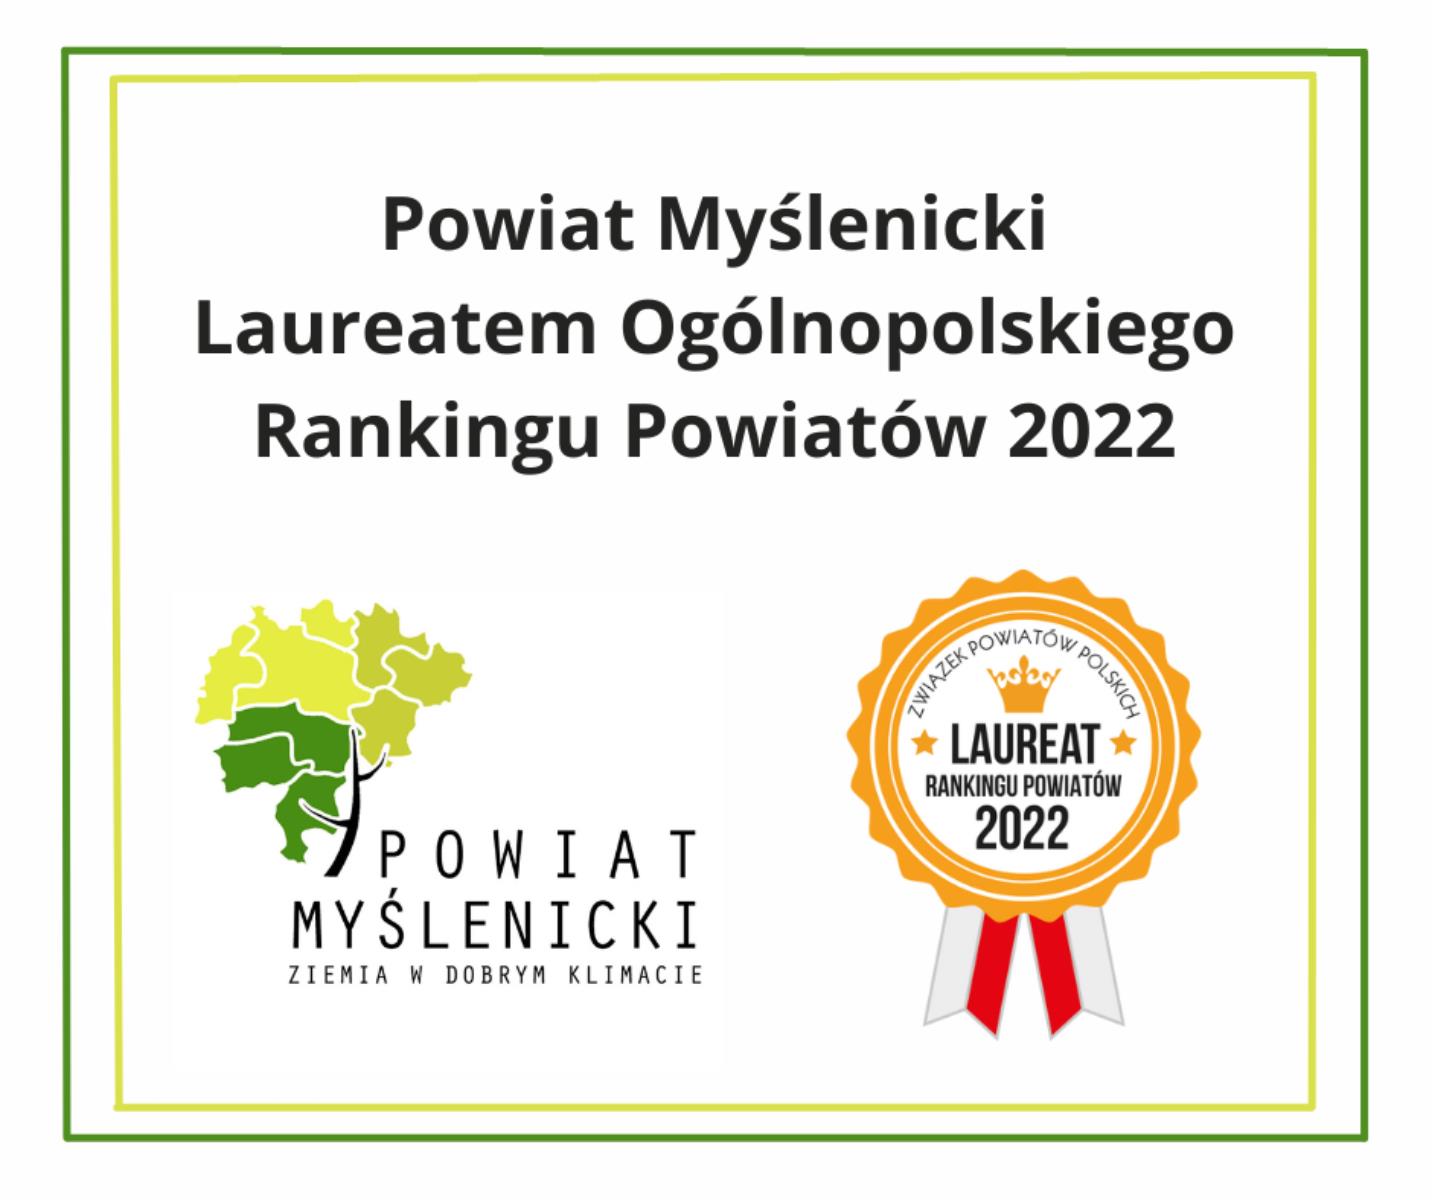 Powiat Myślenicki nagrodzony Tytułem Laureata Rankingu Powiatów 2022